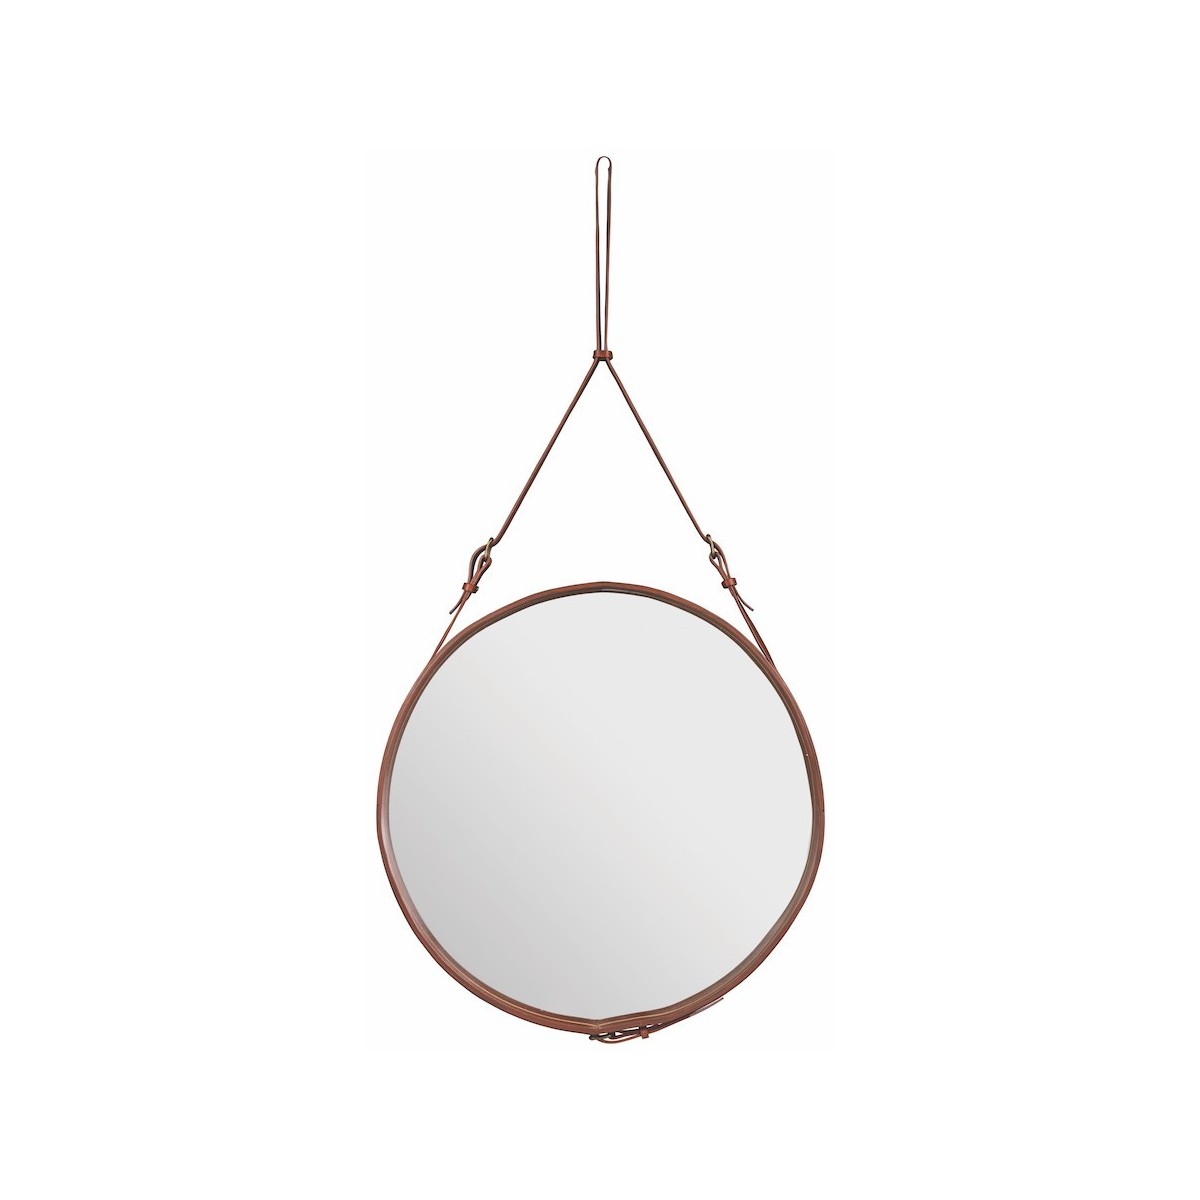 ø58cm - Cuir naturel - miroir circulaire Adnet